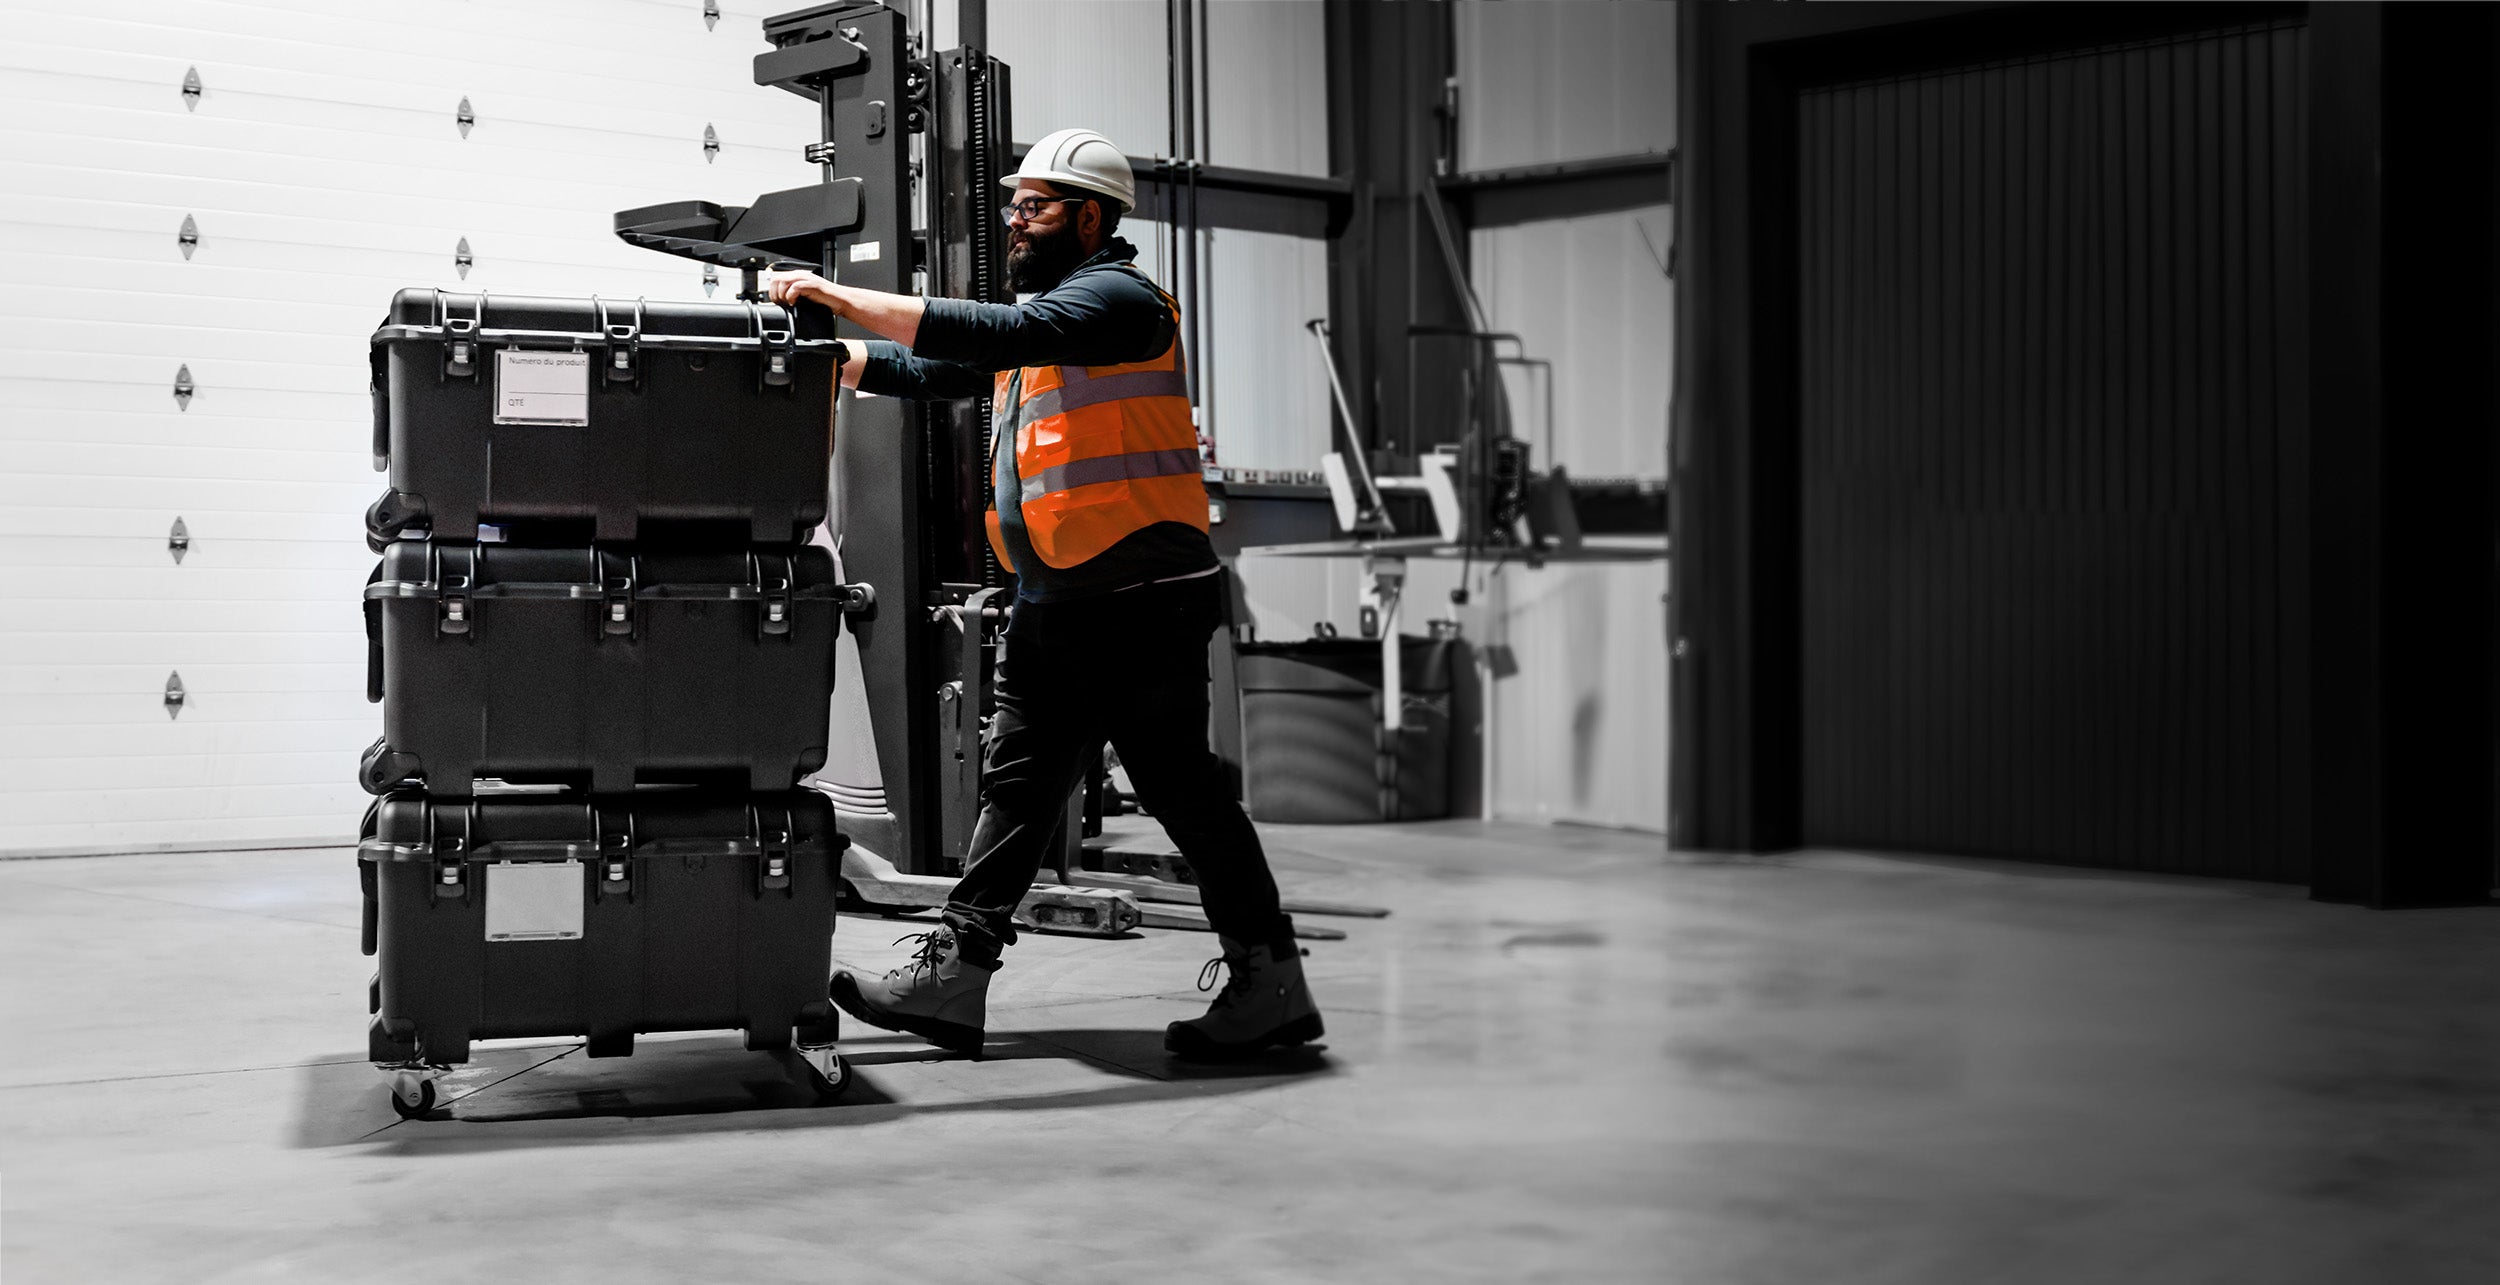 Le site valises de NANUK est équipé de roues, ce qui est avantageux pour les industries où les travailleurs sont souvent en déplacement, et permet de transporter facilement les outils et l'équipement sur les sites de projet.